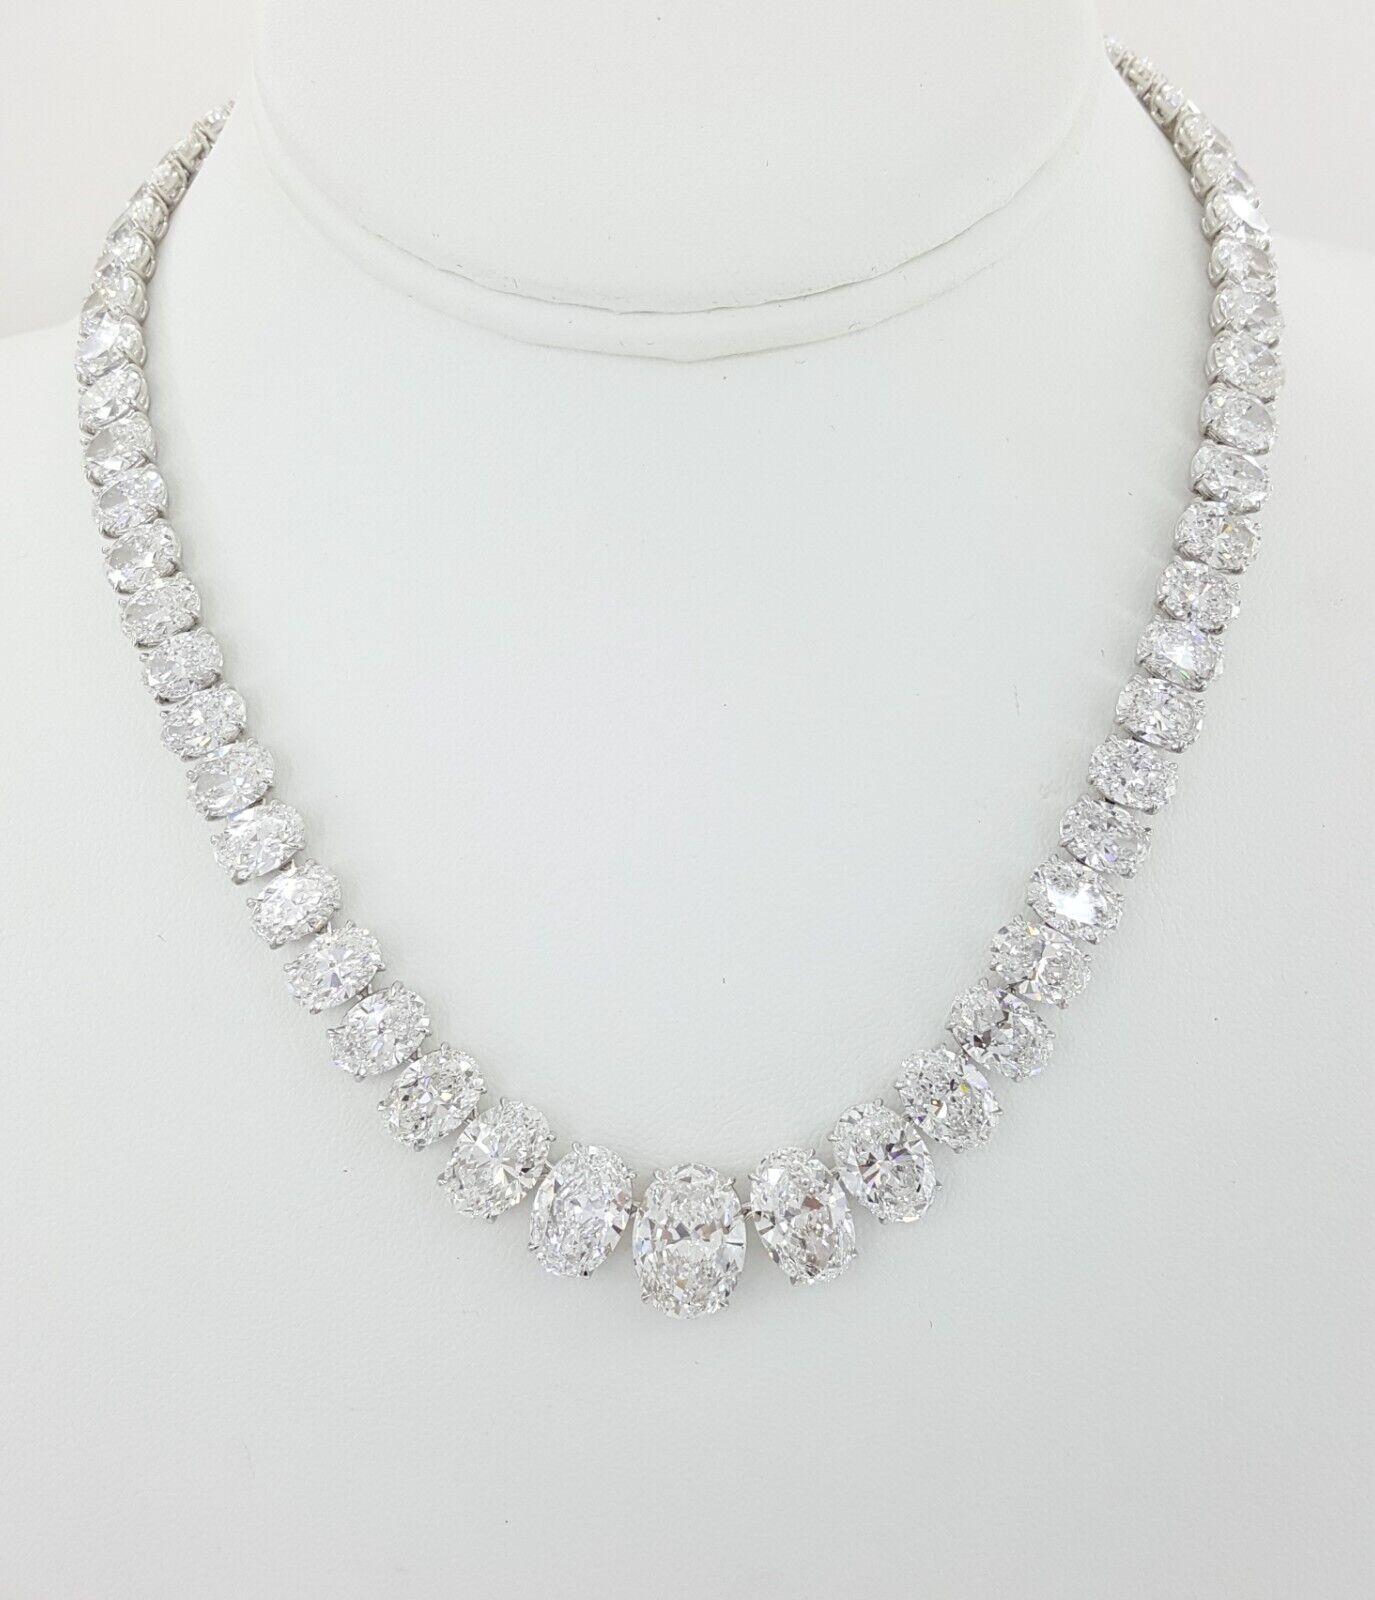 Voici le collier de diamants Riviera - un chef-d'œuvre d'art et d'élégance inégalé. Fabriqué à la main en platine luxueux, ce collier est orné d'un ensemble éblouissant de 65 diamants de taille ovale certifiés GIA, totalisant un poids impressionnant